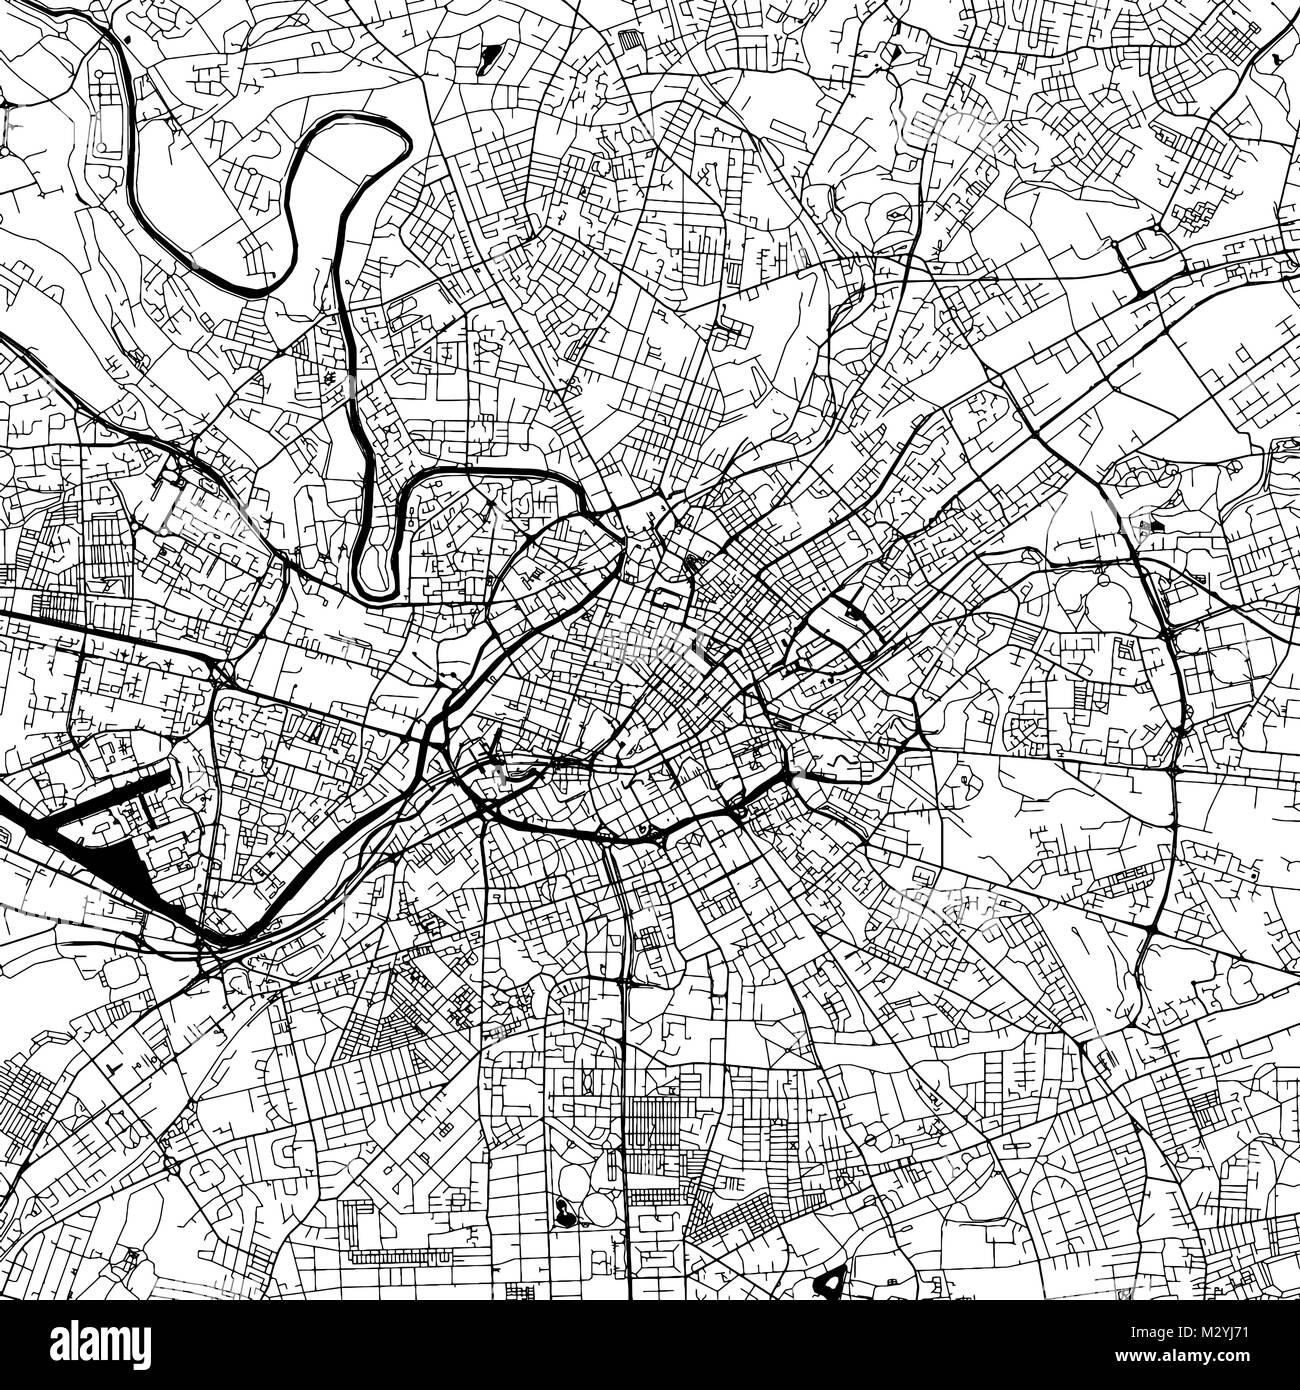 Manchester Downtown Vektorkarte Monochrome Kunstdruck, Outline Version für Infografik Hintergrund, schwarze Straßen und Wasserstraßen Stock Vektor